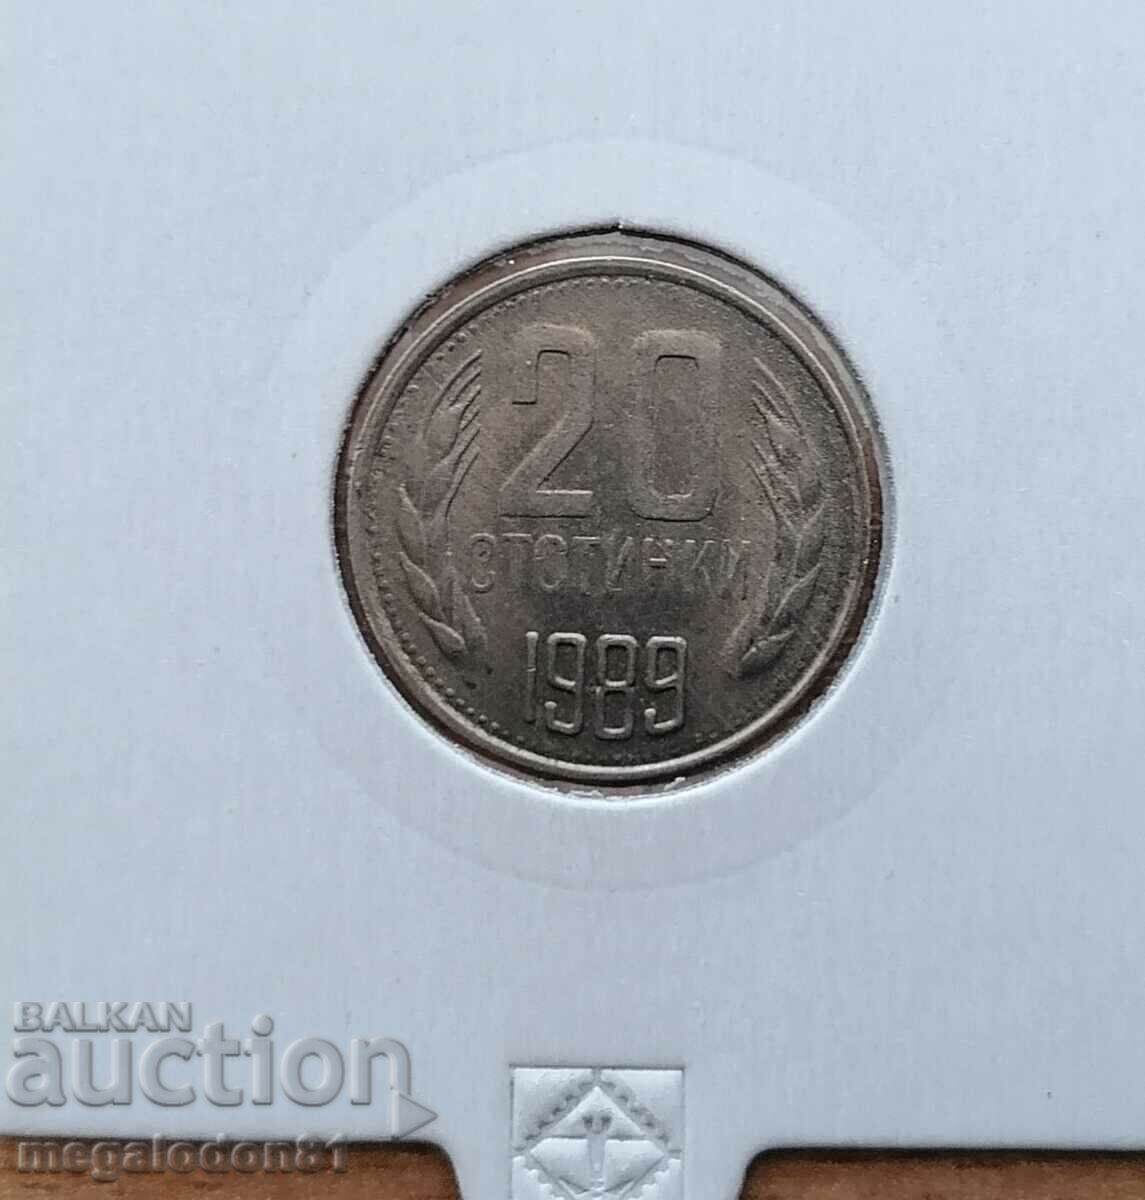 Bulgaria - 20 cents 1989, curiosity